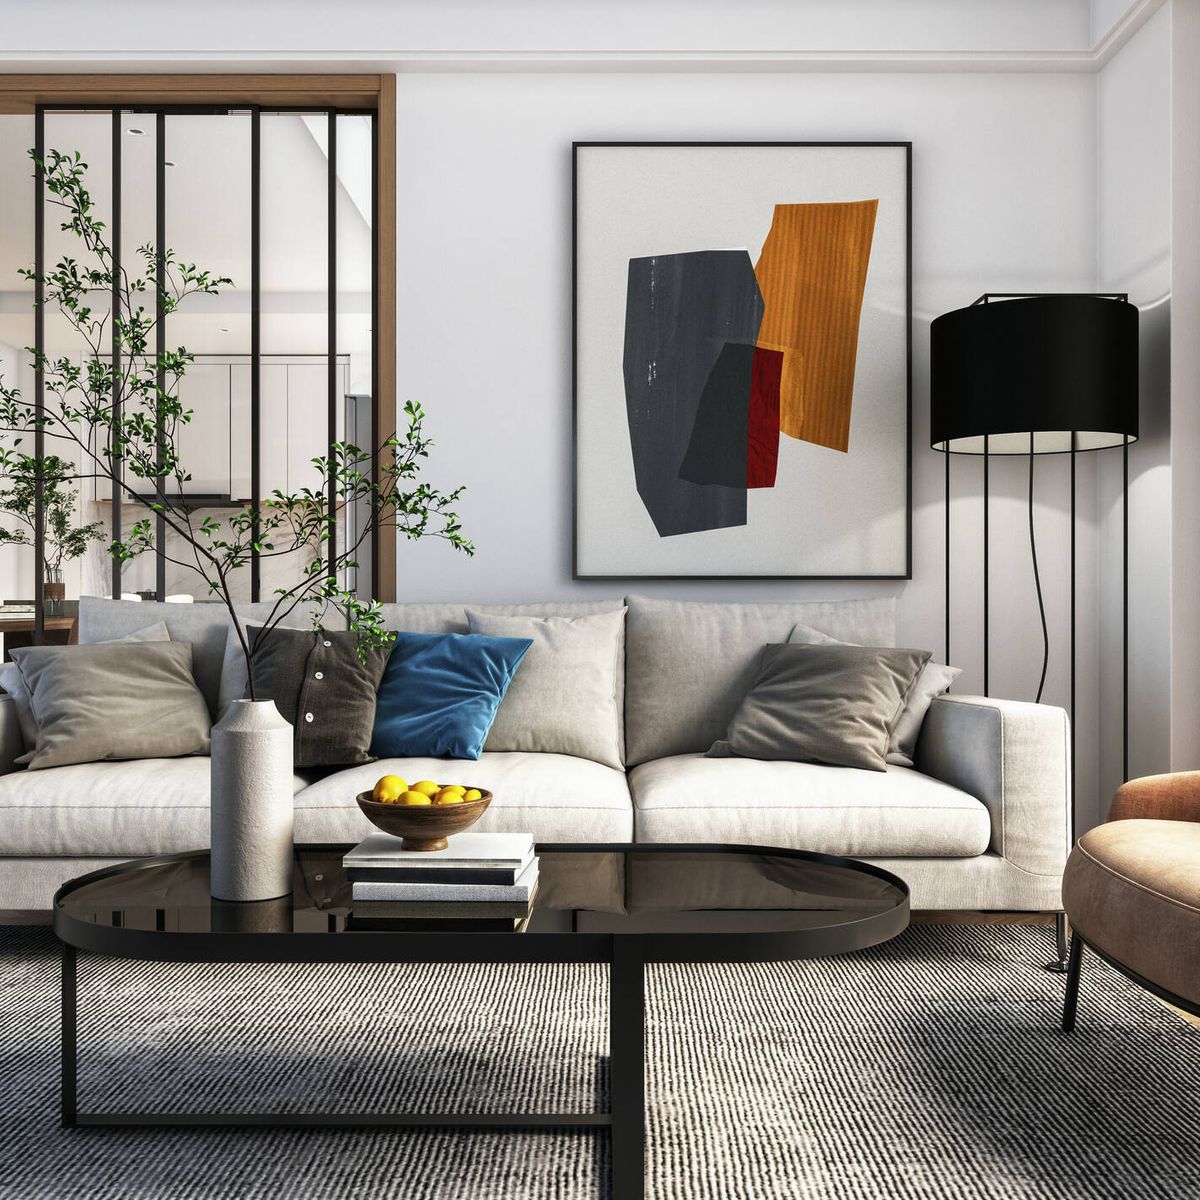 6 Tipos de cojines para sofás para elevar tu decoración